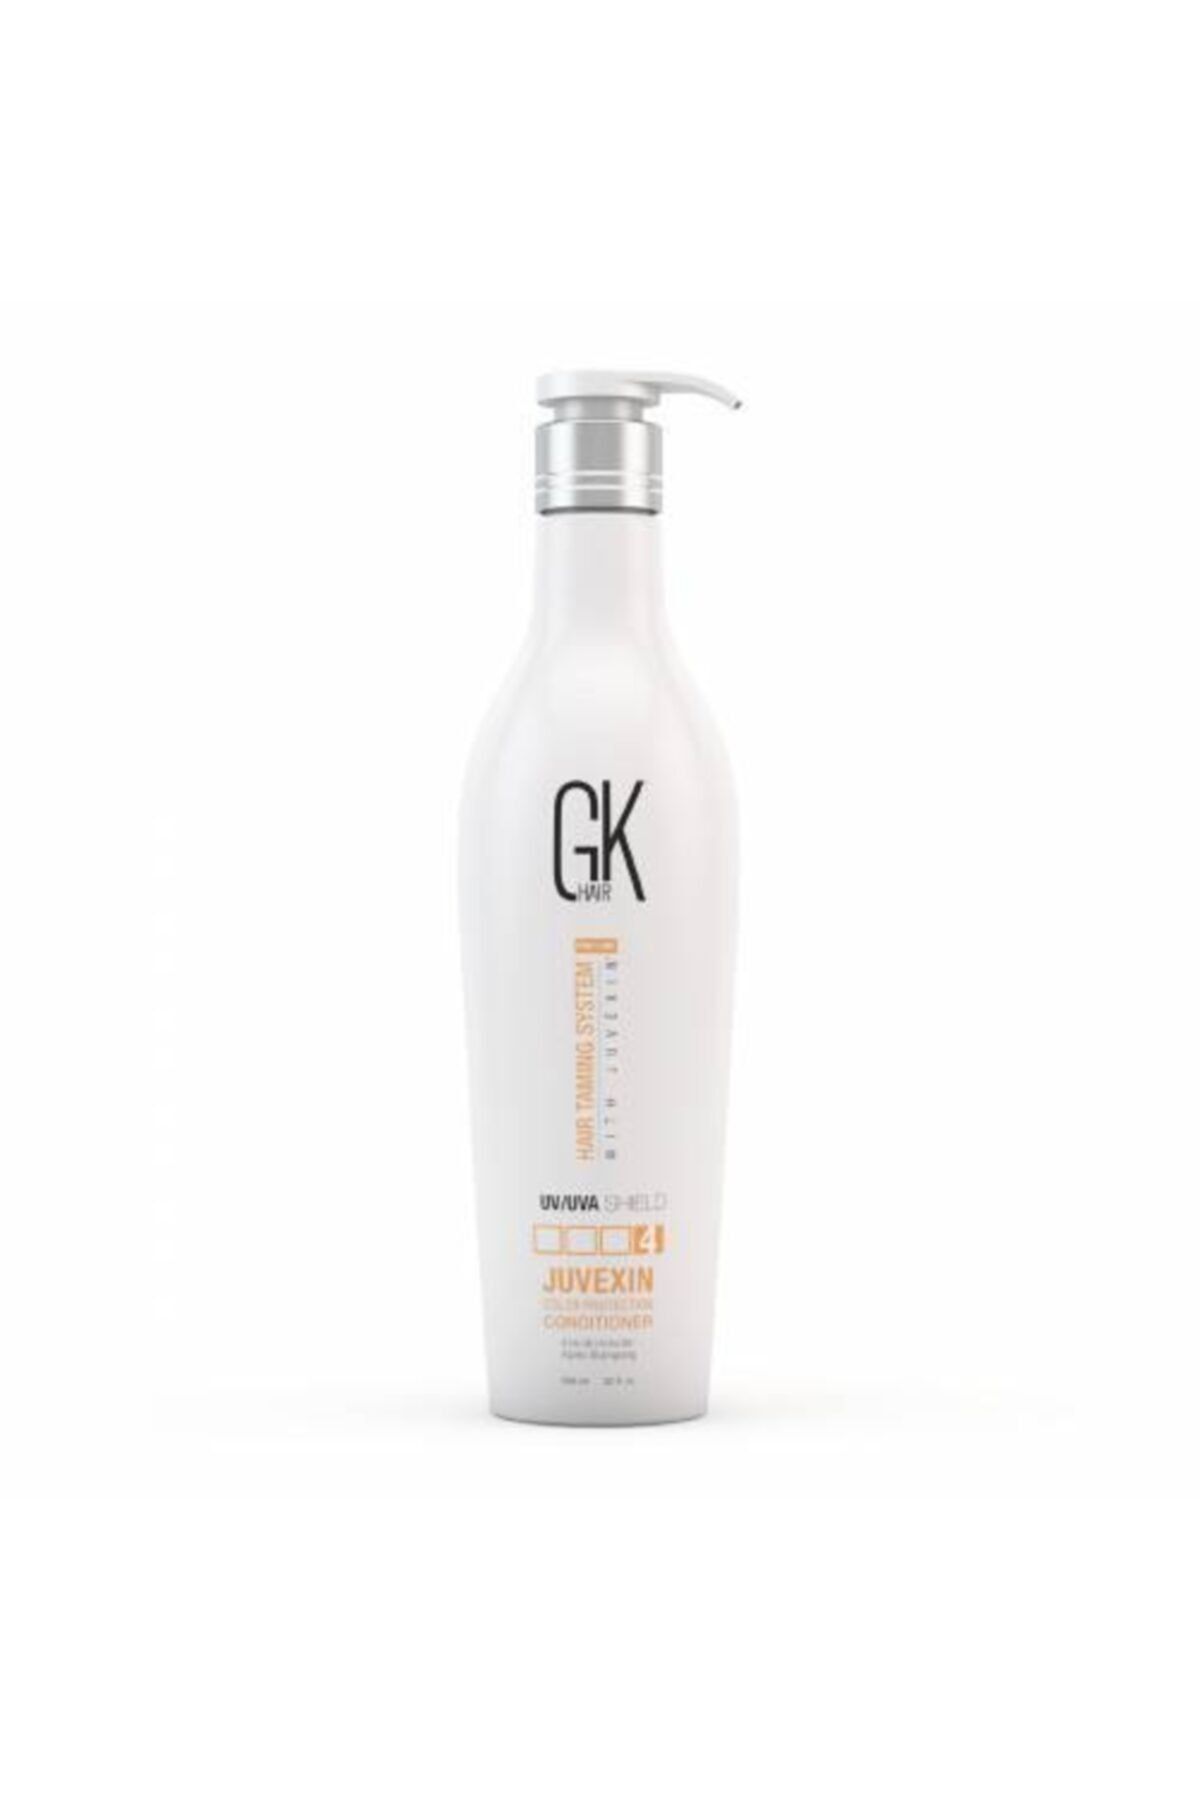 GK HAIR Global Keratin Shield Boya Koruyucu Krem Saç Koruması Için 650 ml Paraben Sulfat Içermez